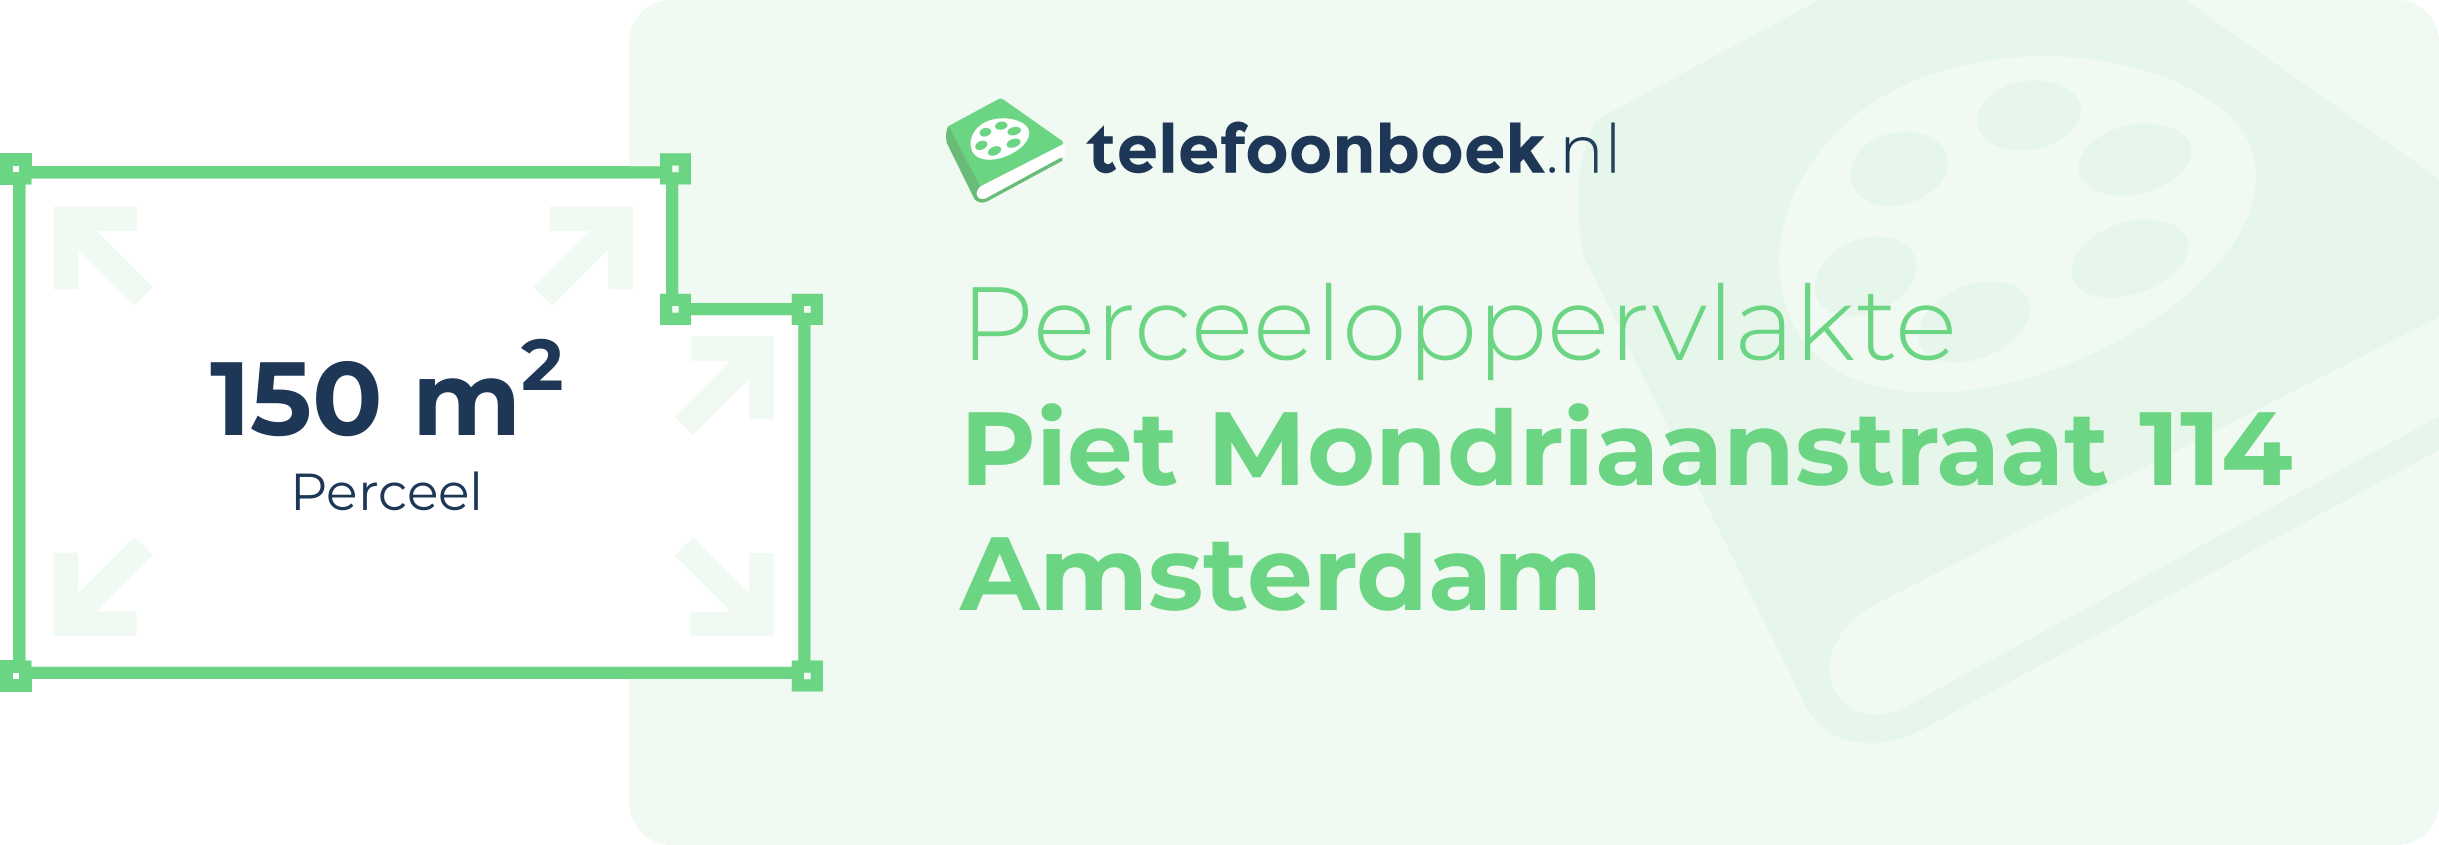 Perceeloppervlakte Piet Mondriaanstraat 114 Amsterdam